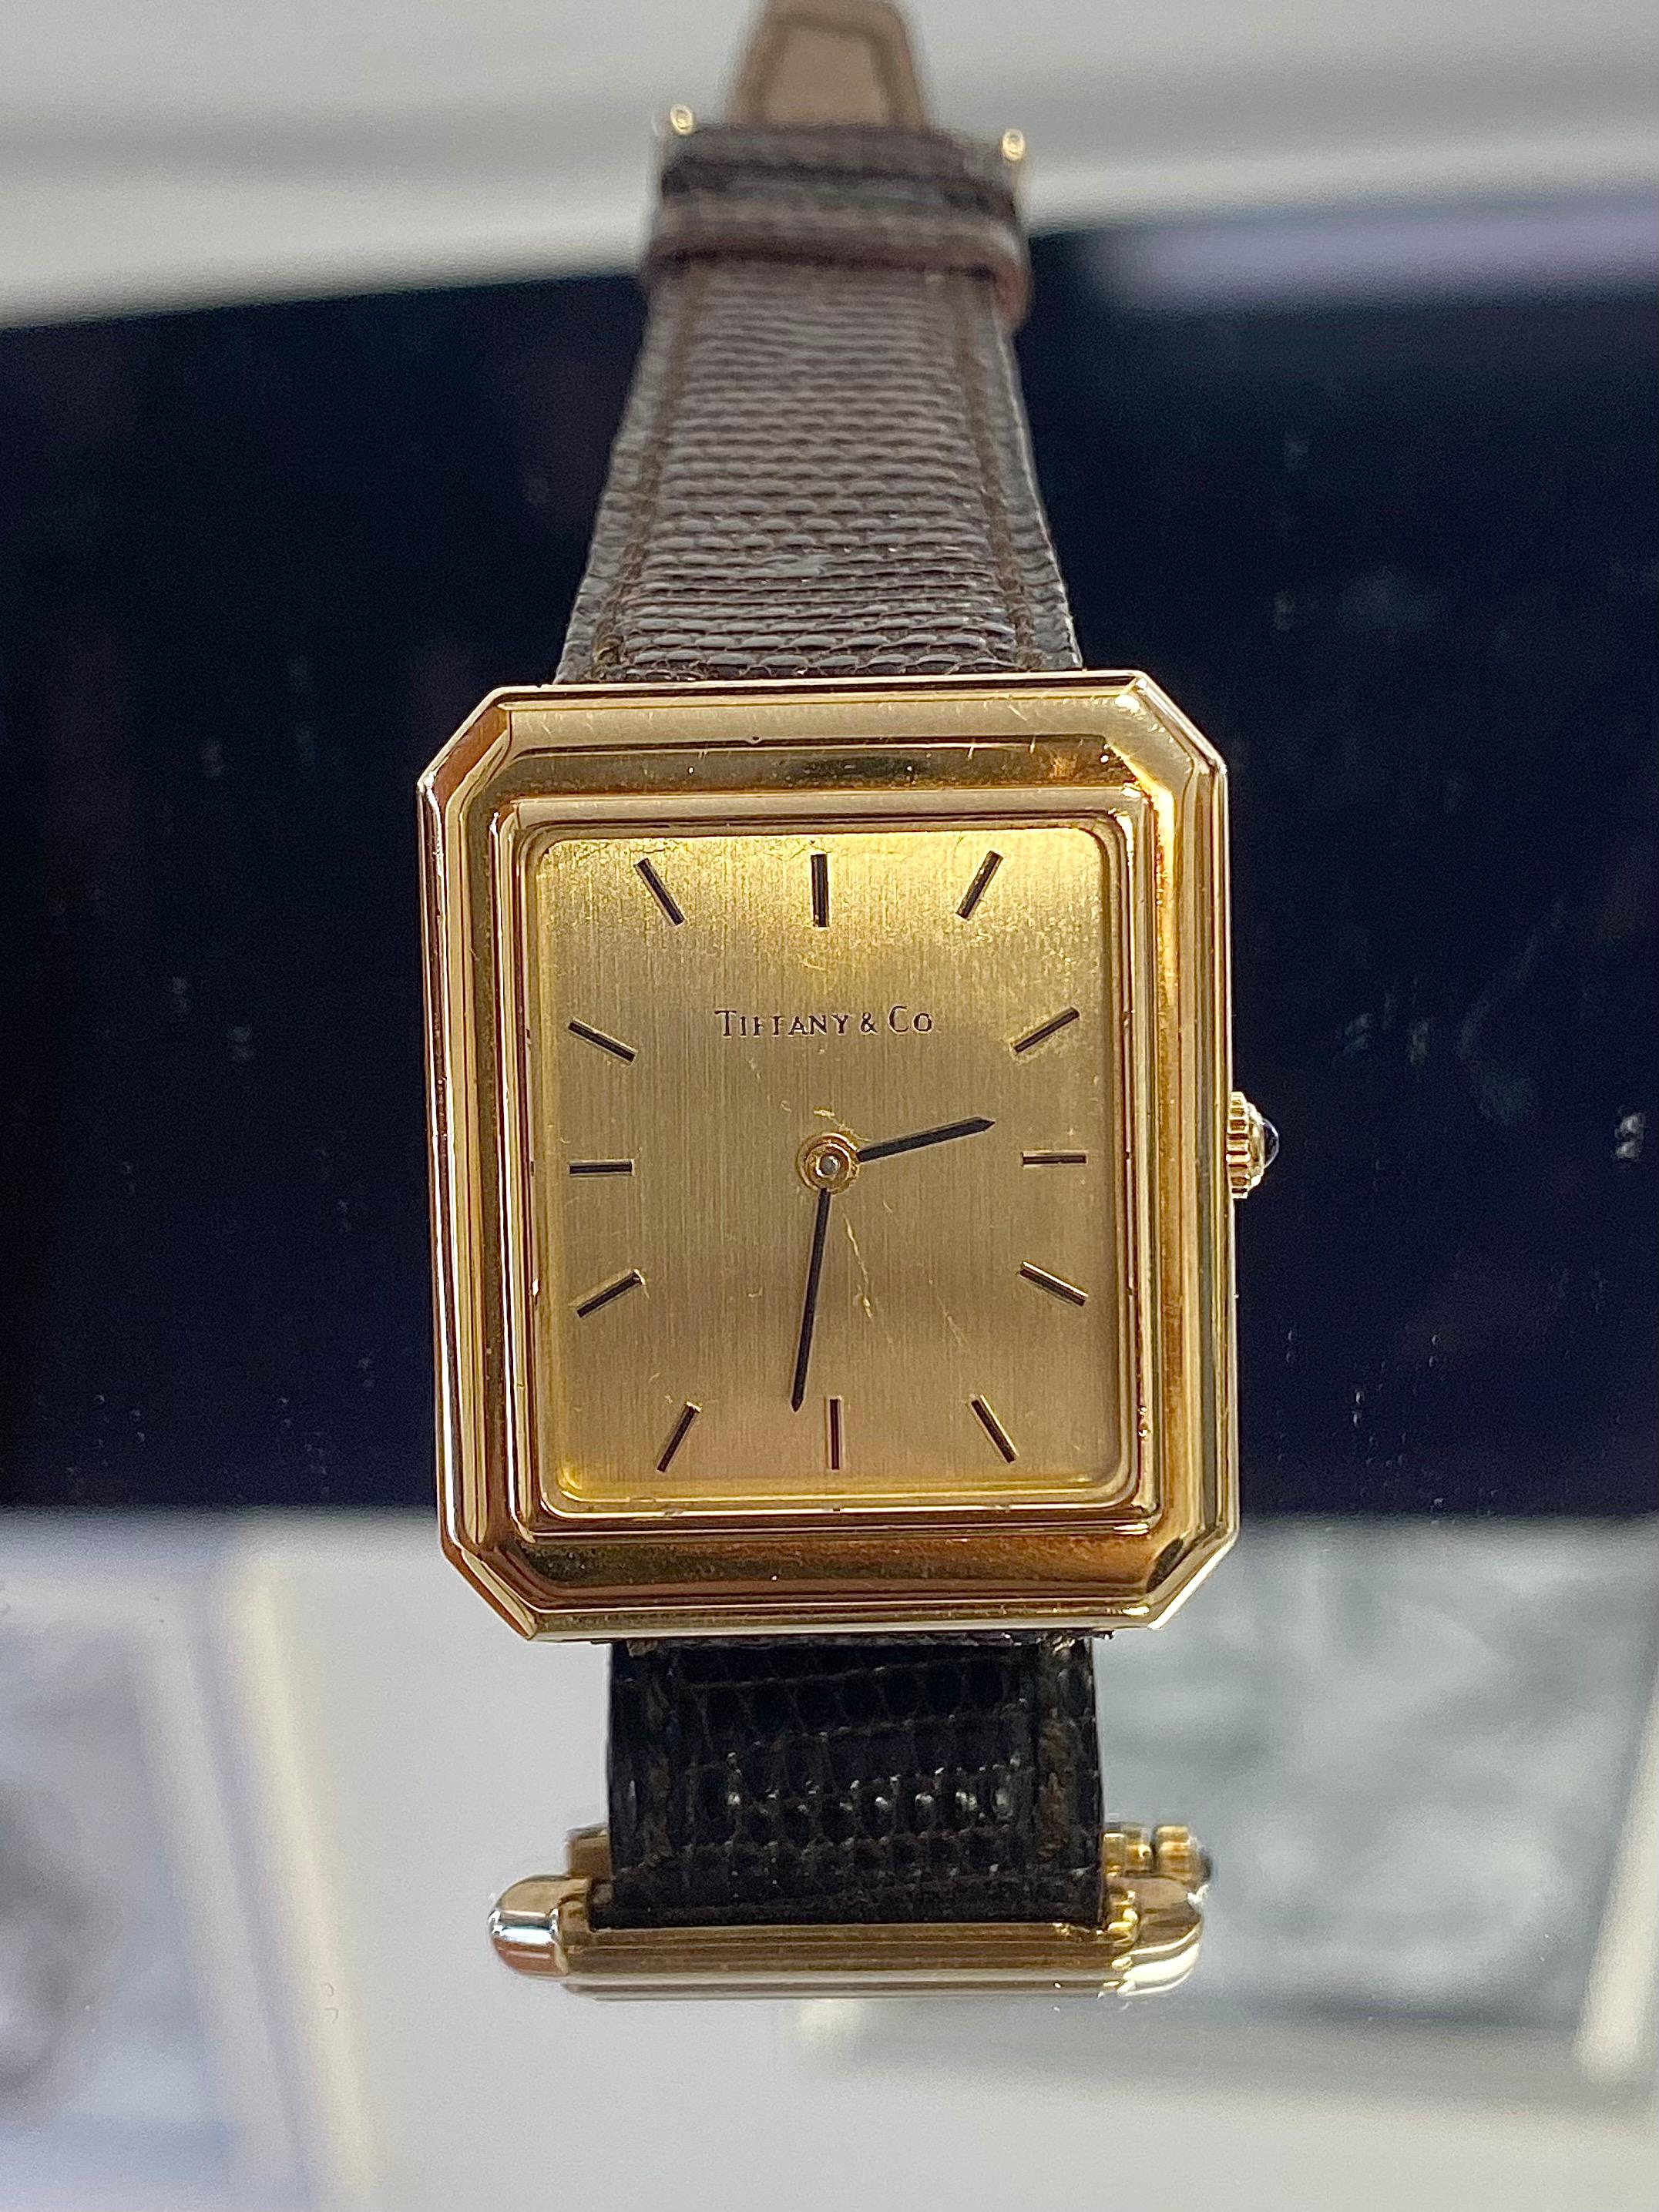 Edle und elegante Tiffany & Co. signierte Vintage-Armbanduhr. Dieses Armband aus massivem 18-karätigem Gold und Leder ist für alle, die einen klassischen und eleganten Zeitmesser suchen. Eine Uhr für diejenigen, die die Subtilität und Anmut des